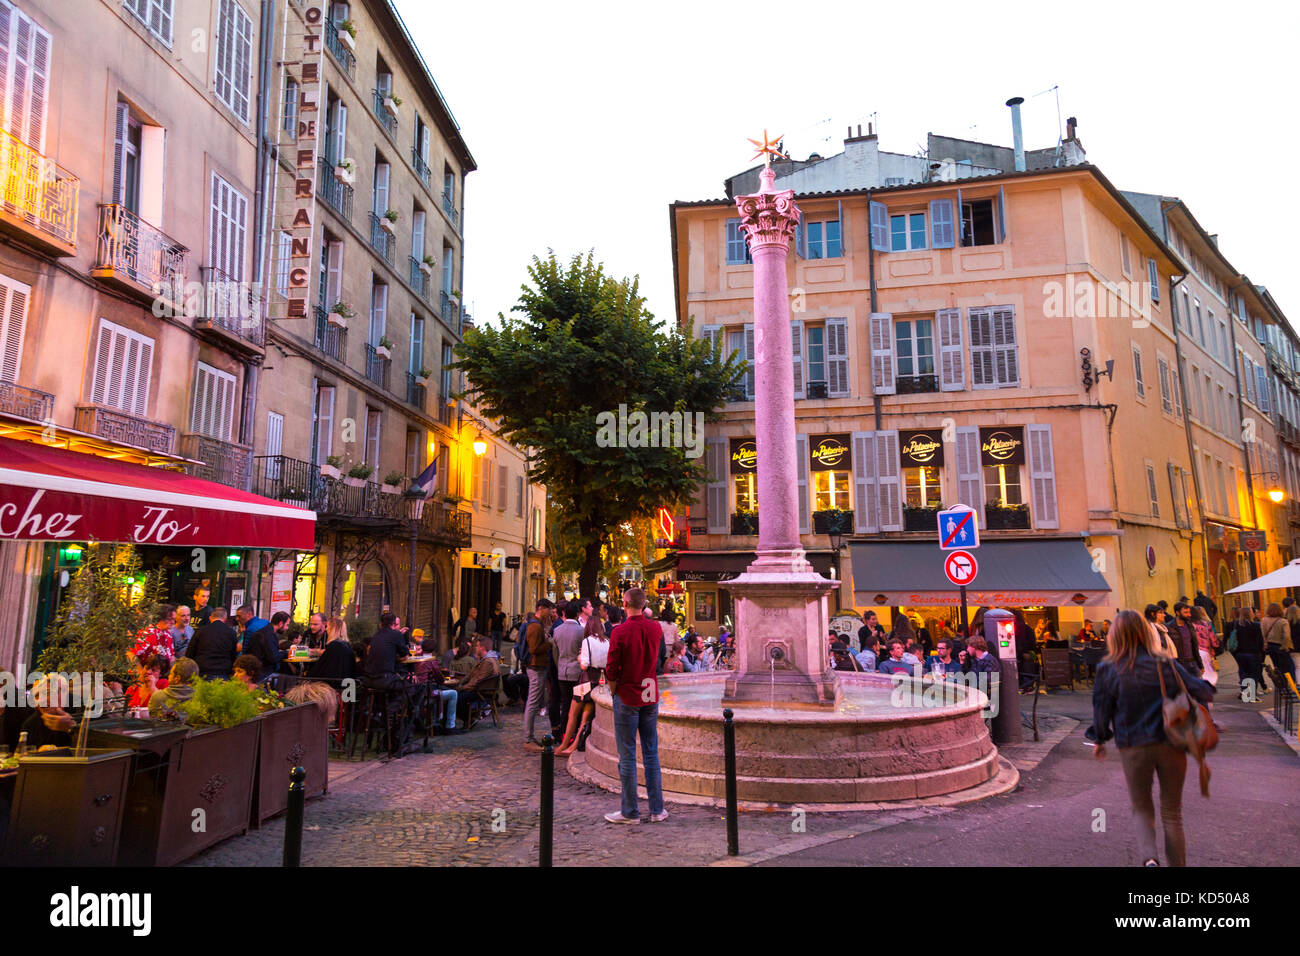 Personnes assises à l'extérieur des restaurants et des bars, ambiance animée à la place des Augustins, Aix en Provence, France Banque D'Images